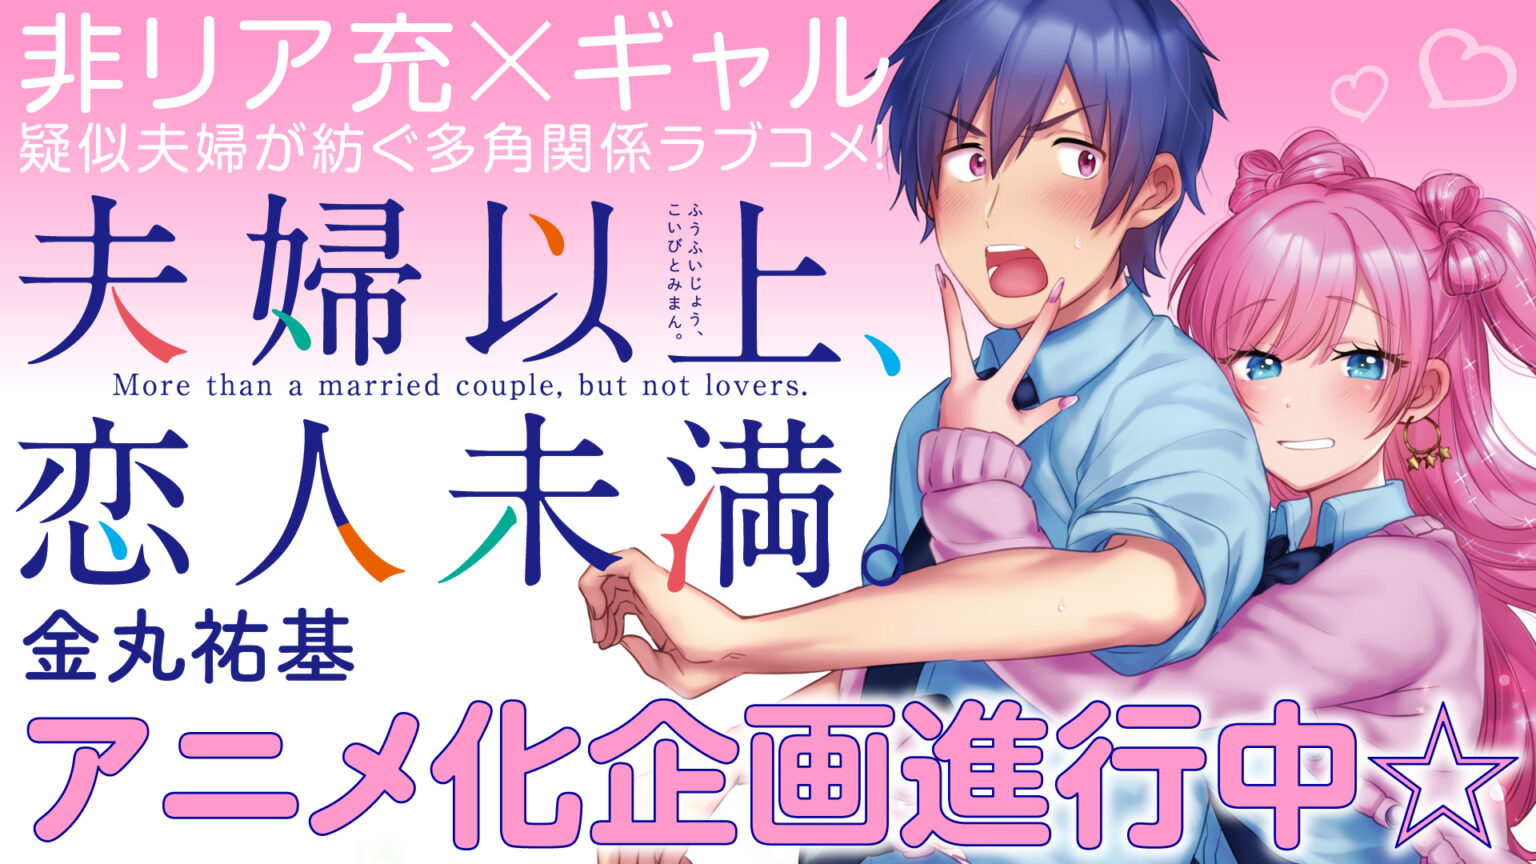 Oshi no Ko: Panini começa a publicar o mangá em setembro